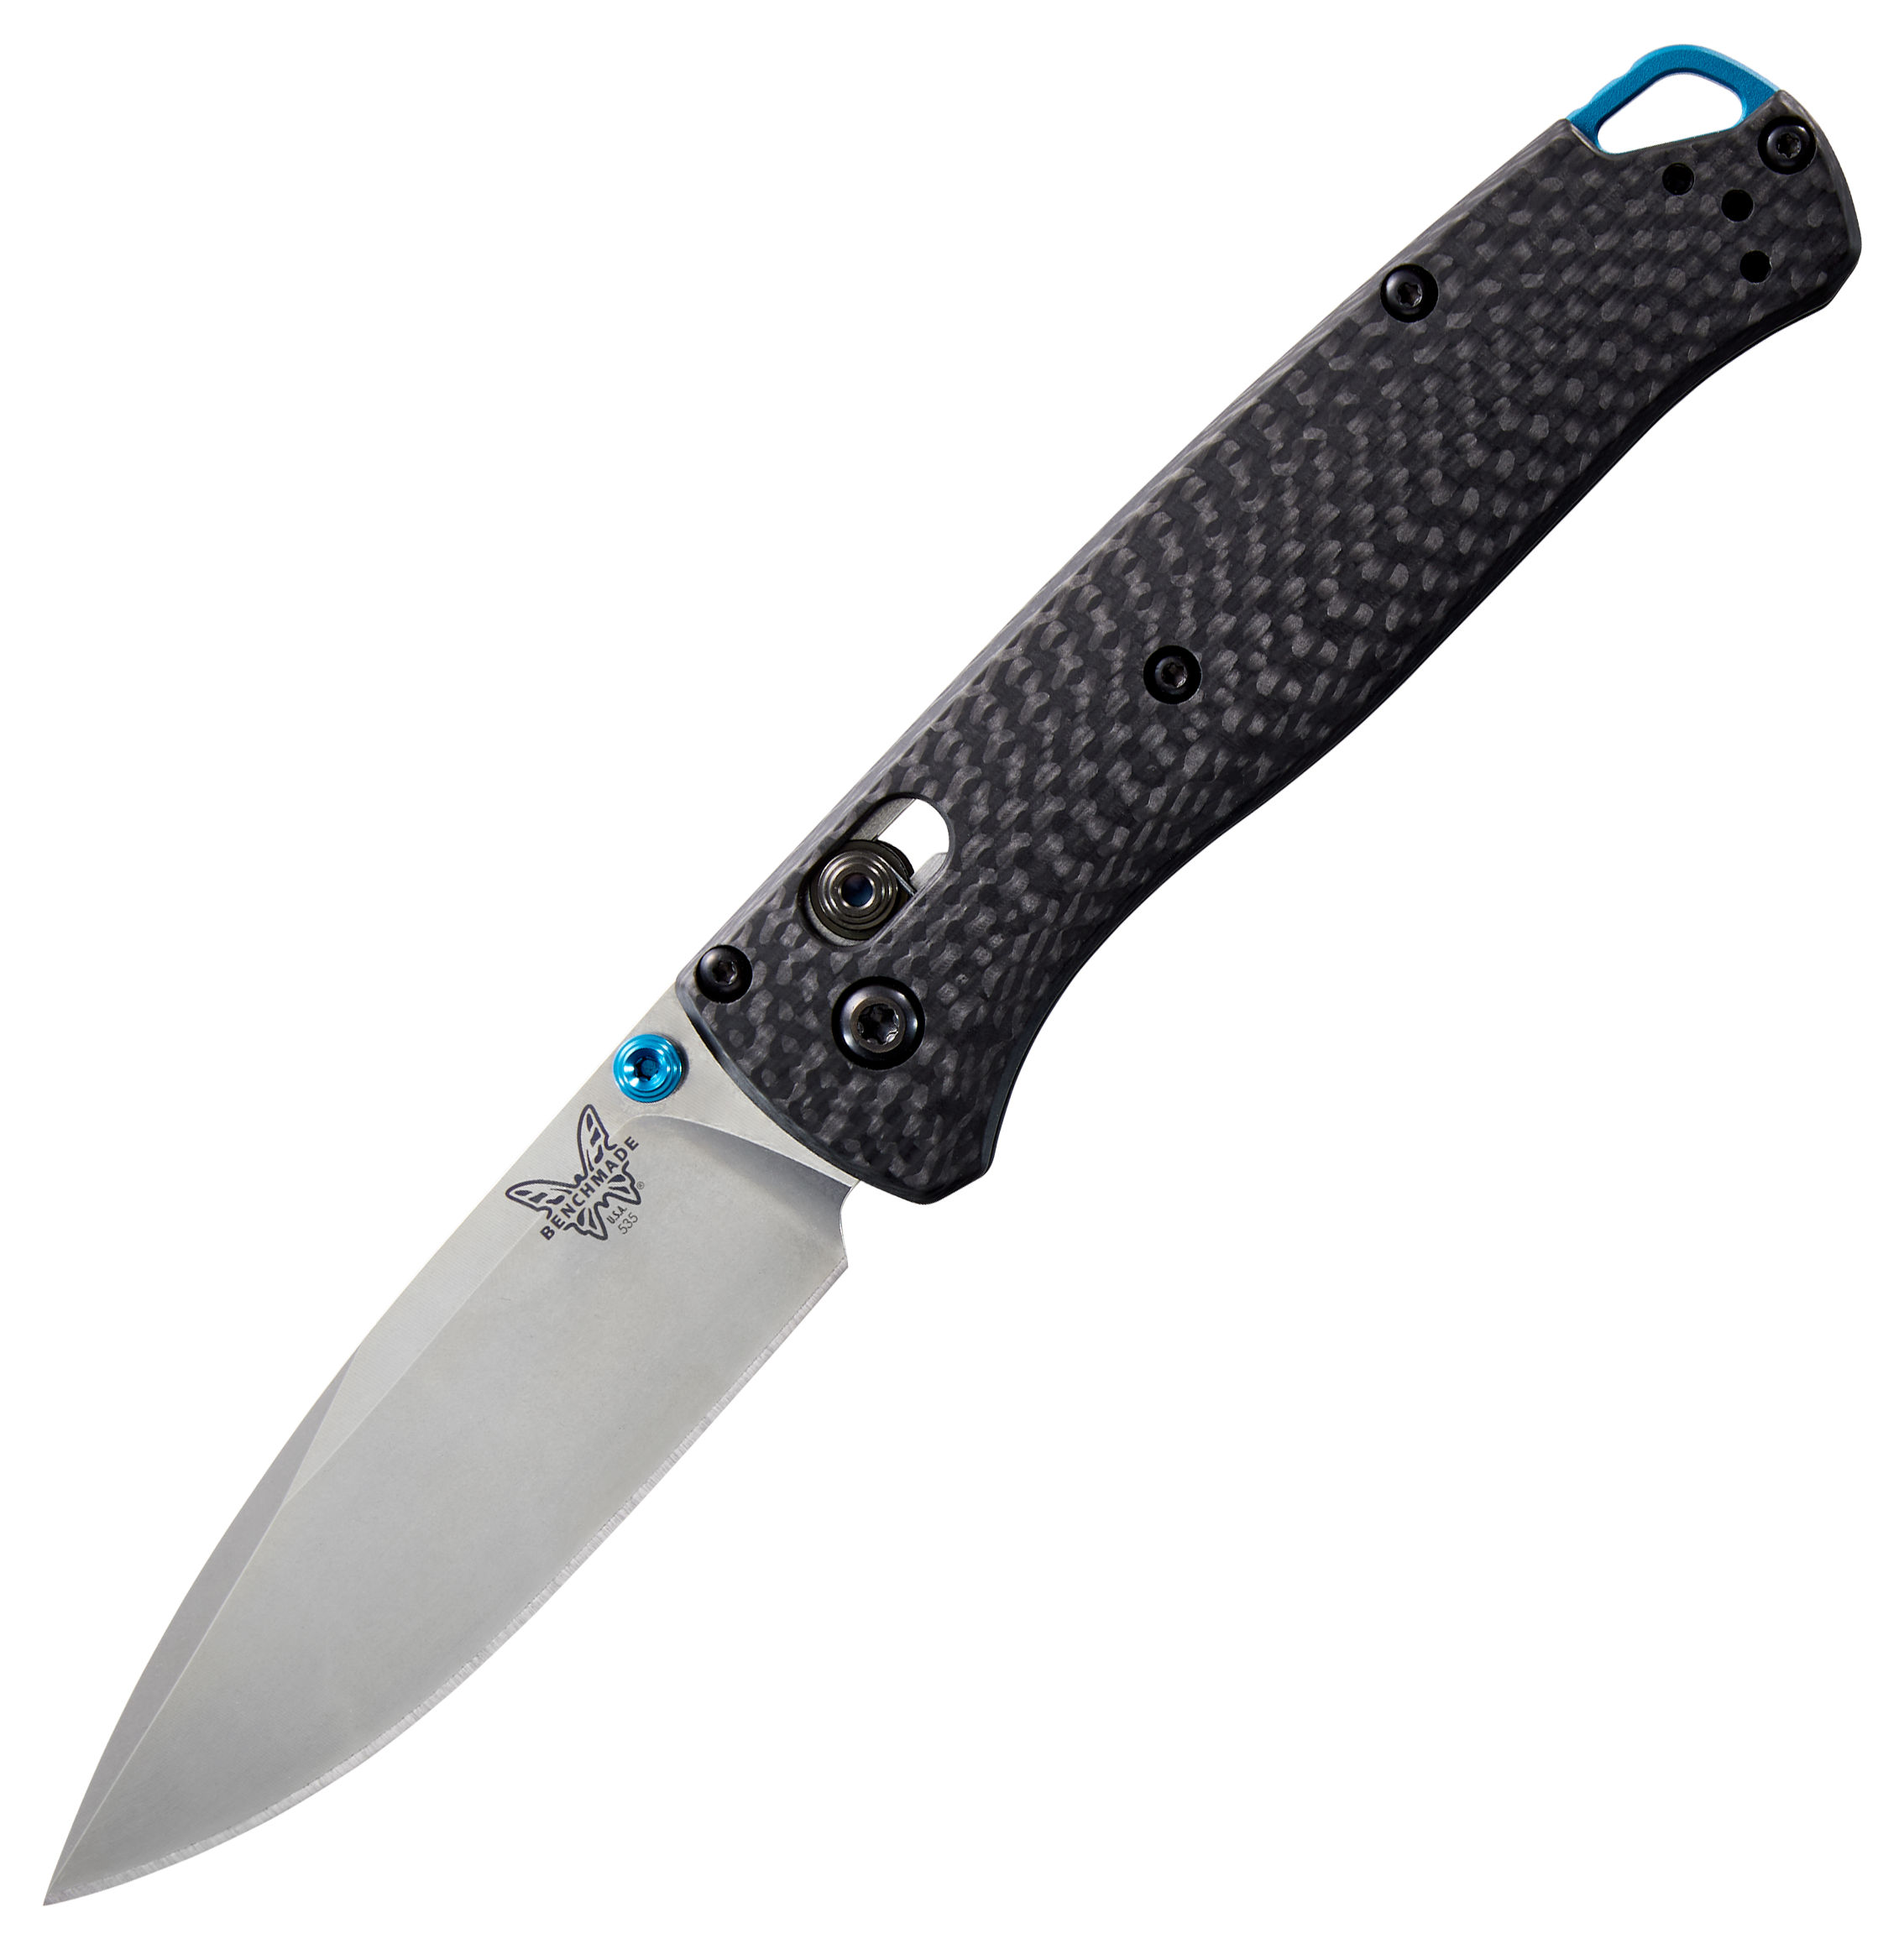 Benchmade Bugout 535-3 Carbon-Fiber Folding Knife